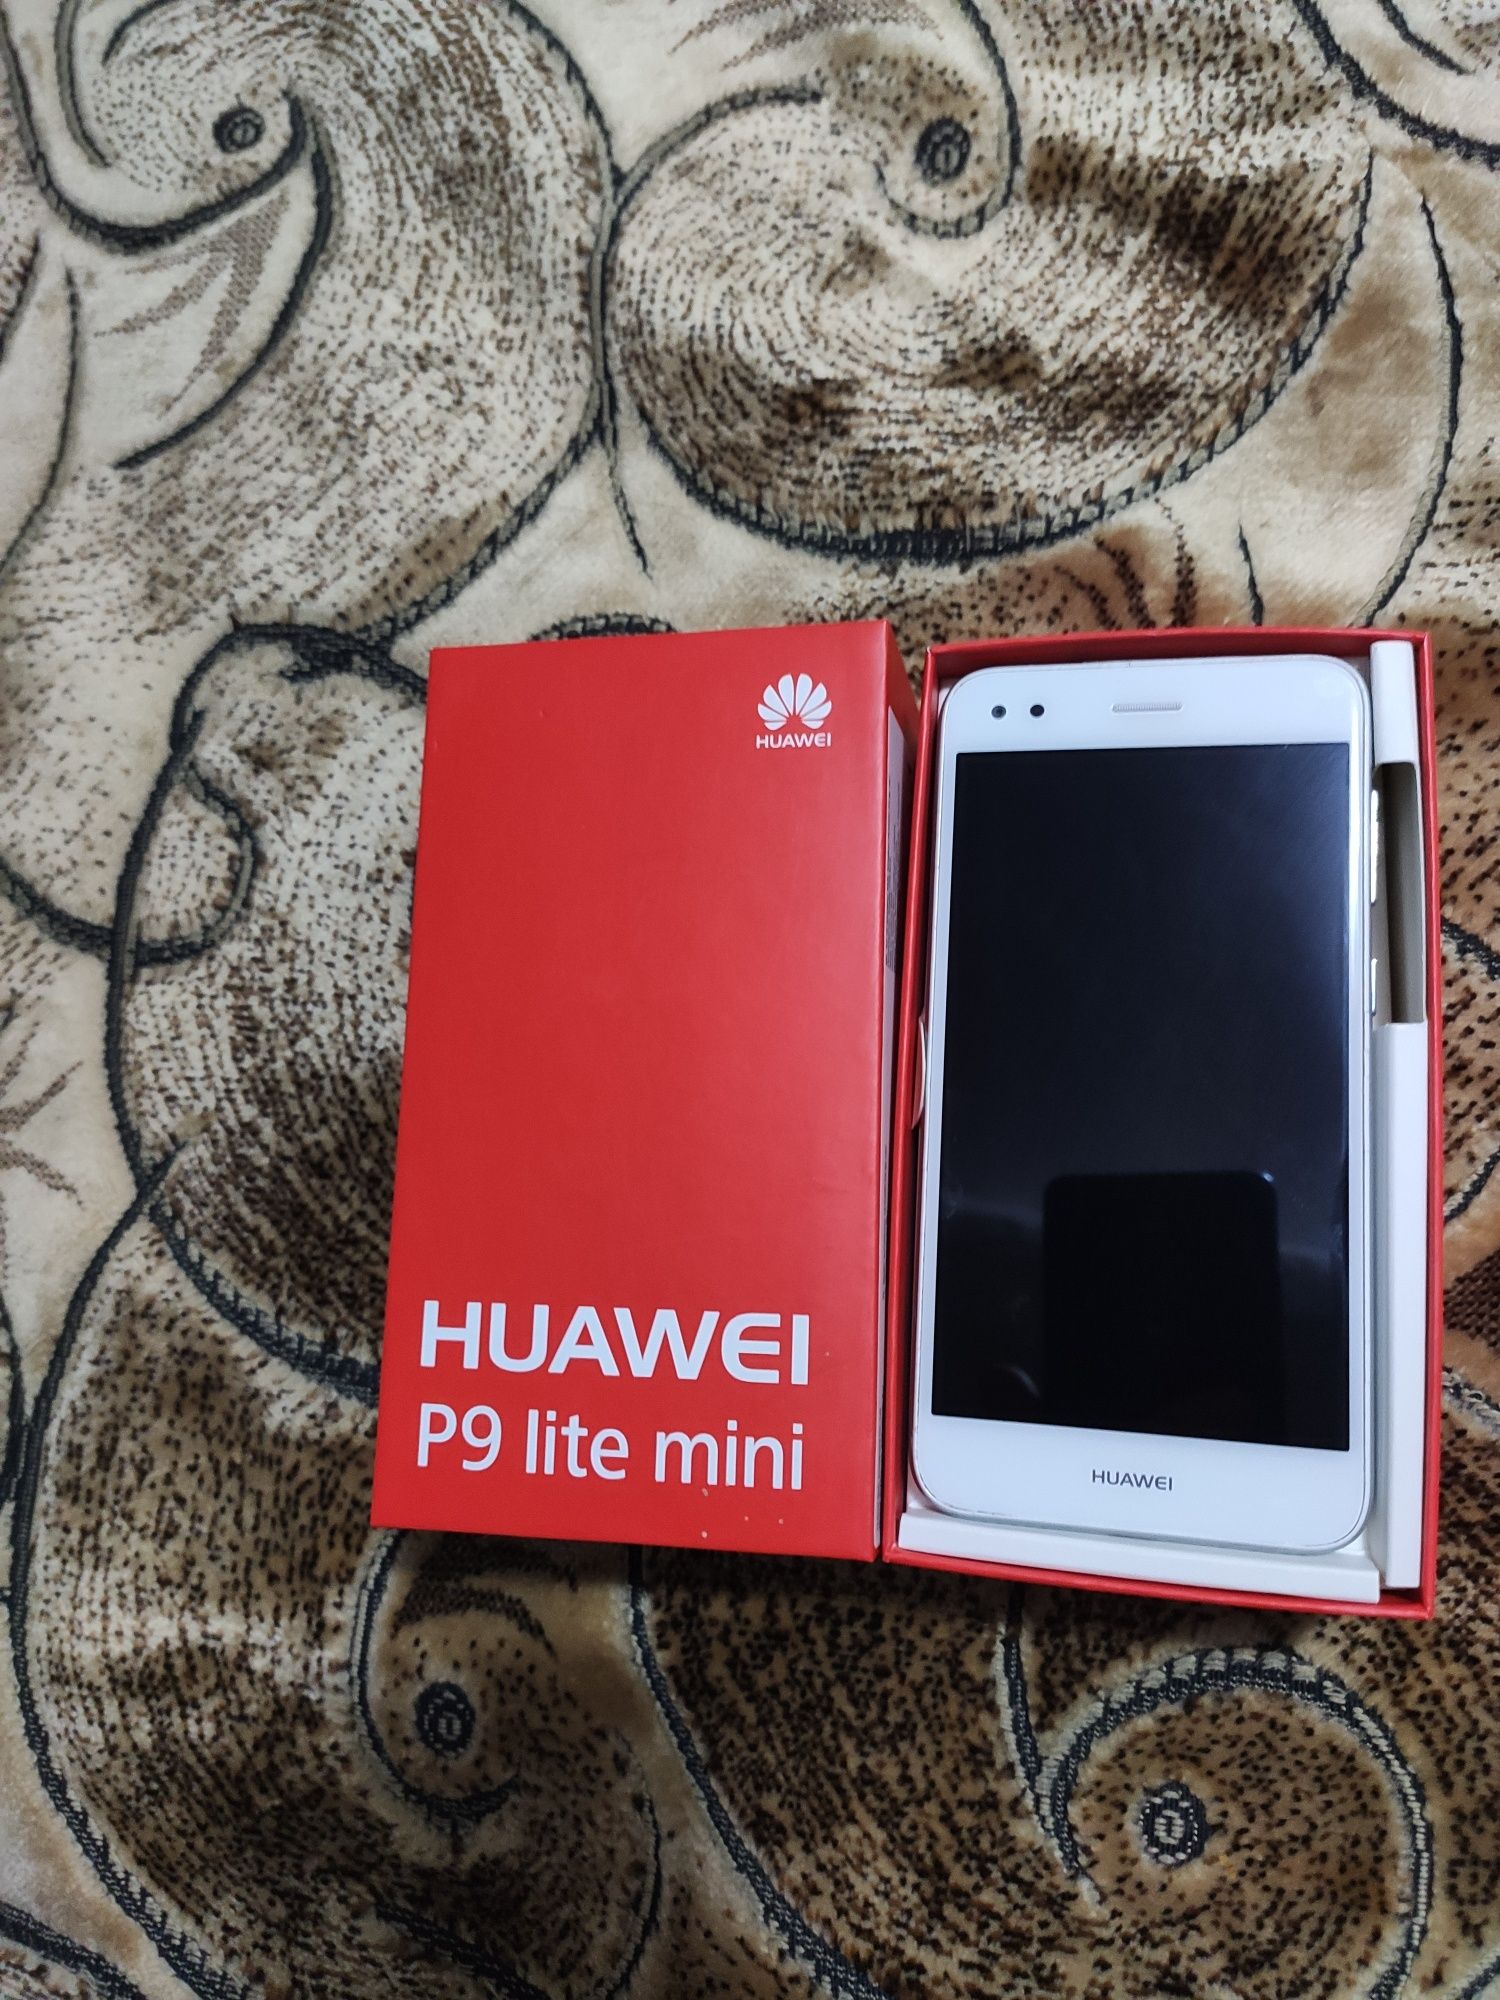 Huawei p9 lite mini